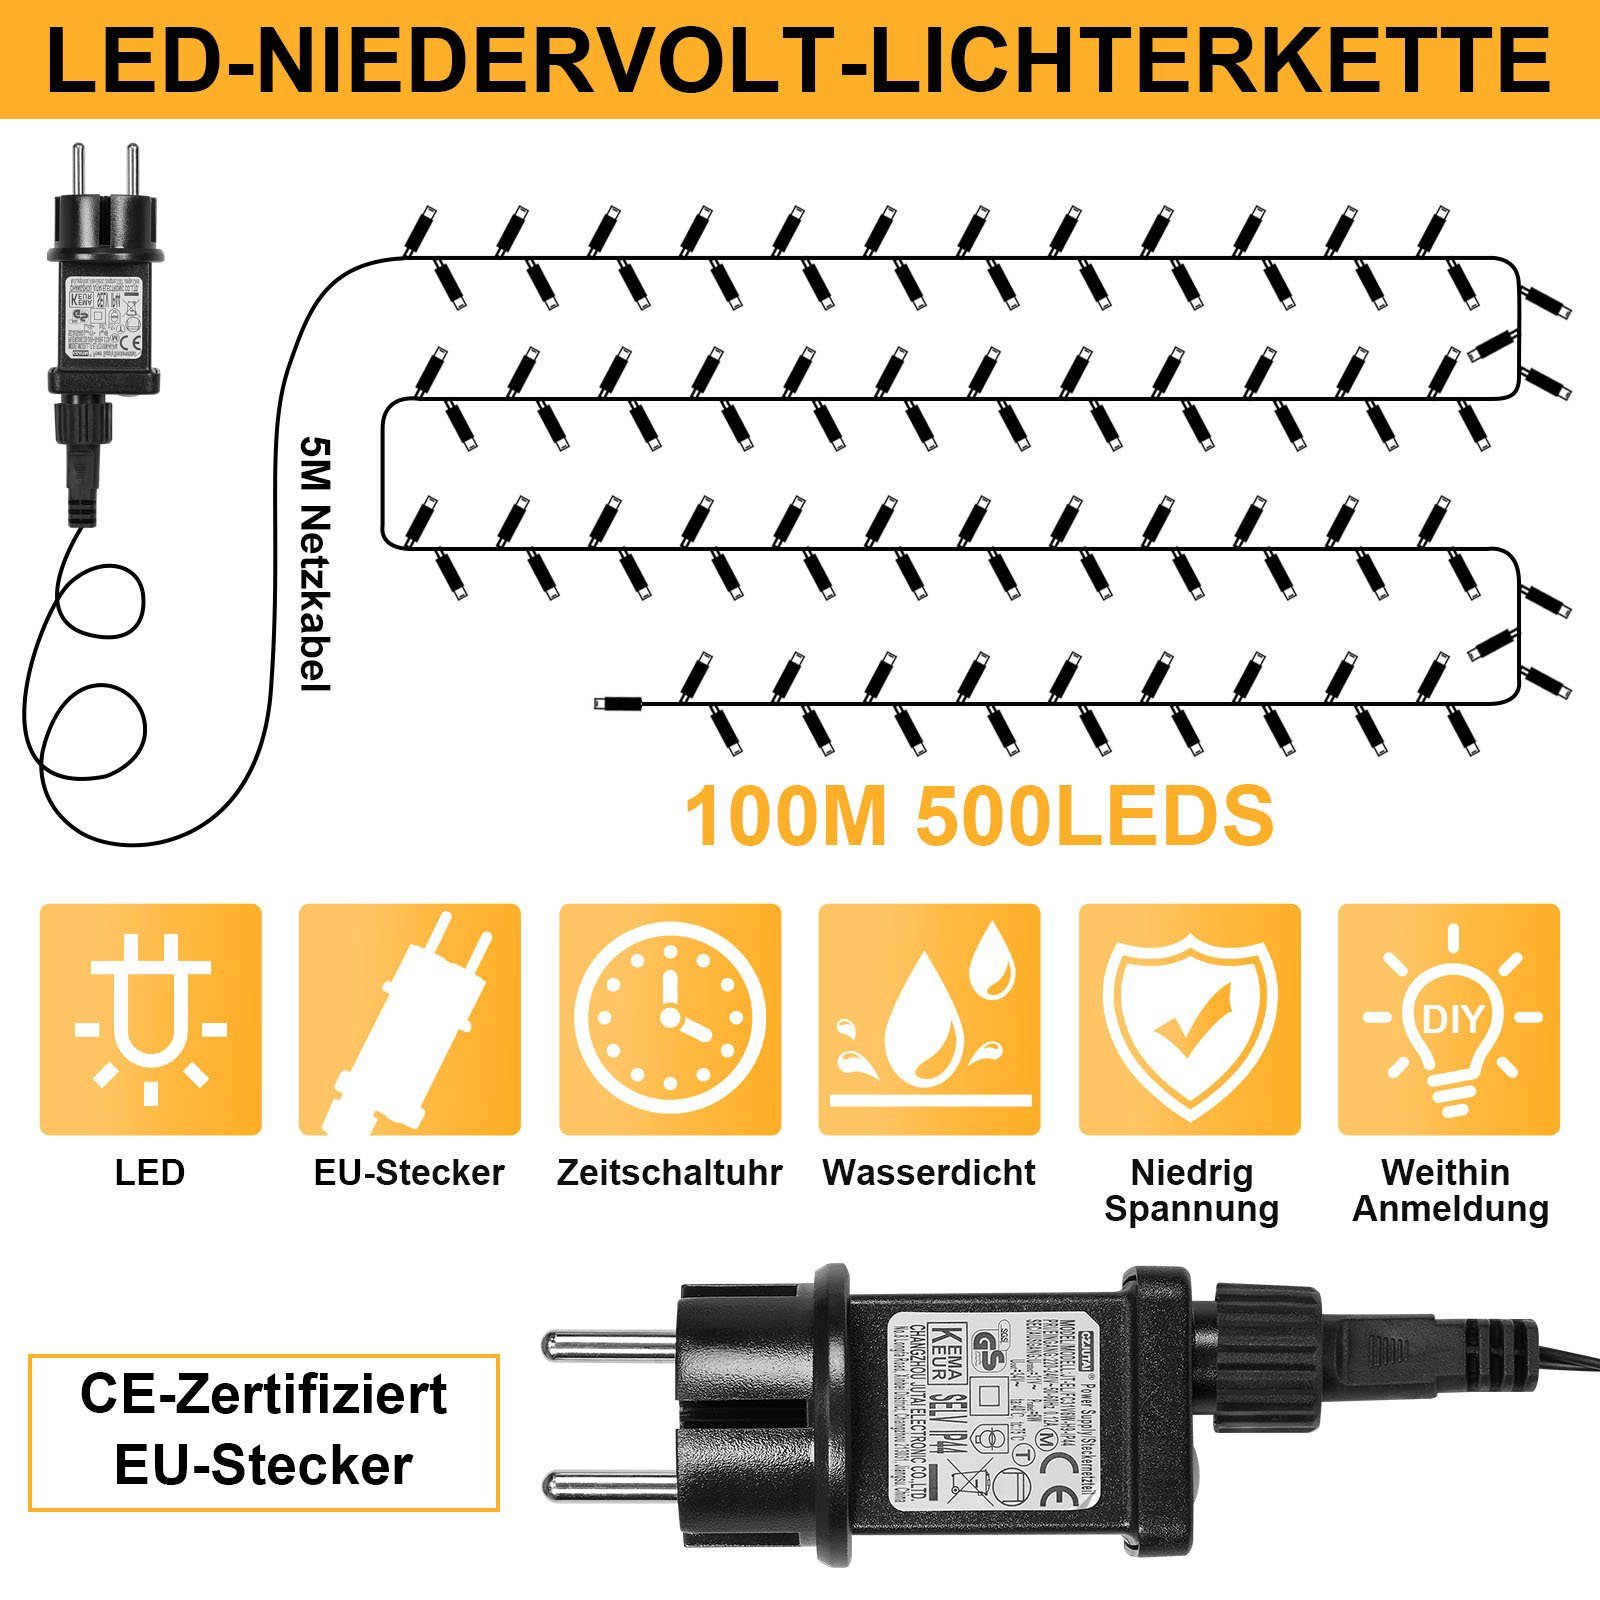 Sunicol LED-Lichterkette 20/50/100M,Schwarzer Draht,Outdoor Weihnachtsbaum Energiesparendes, Garten, 31V 500-flammig, wasserdicht